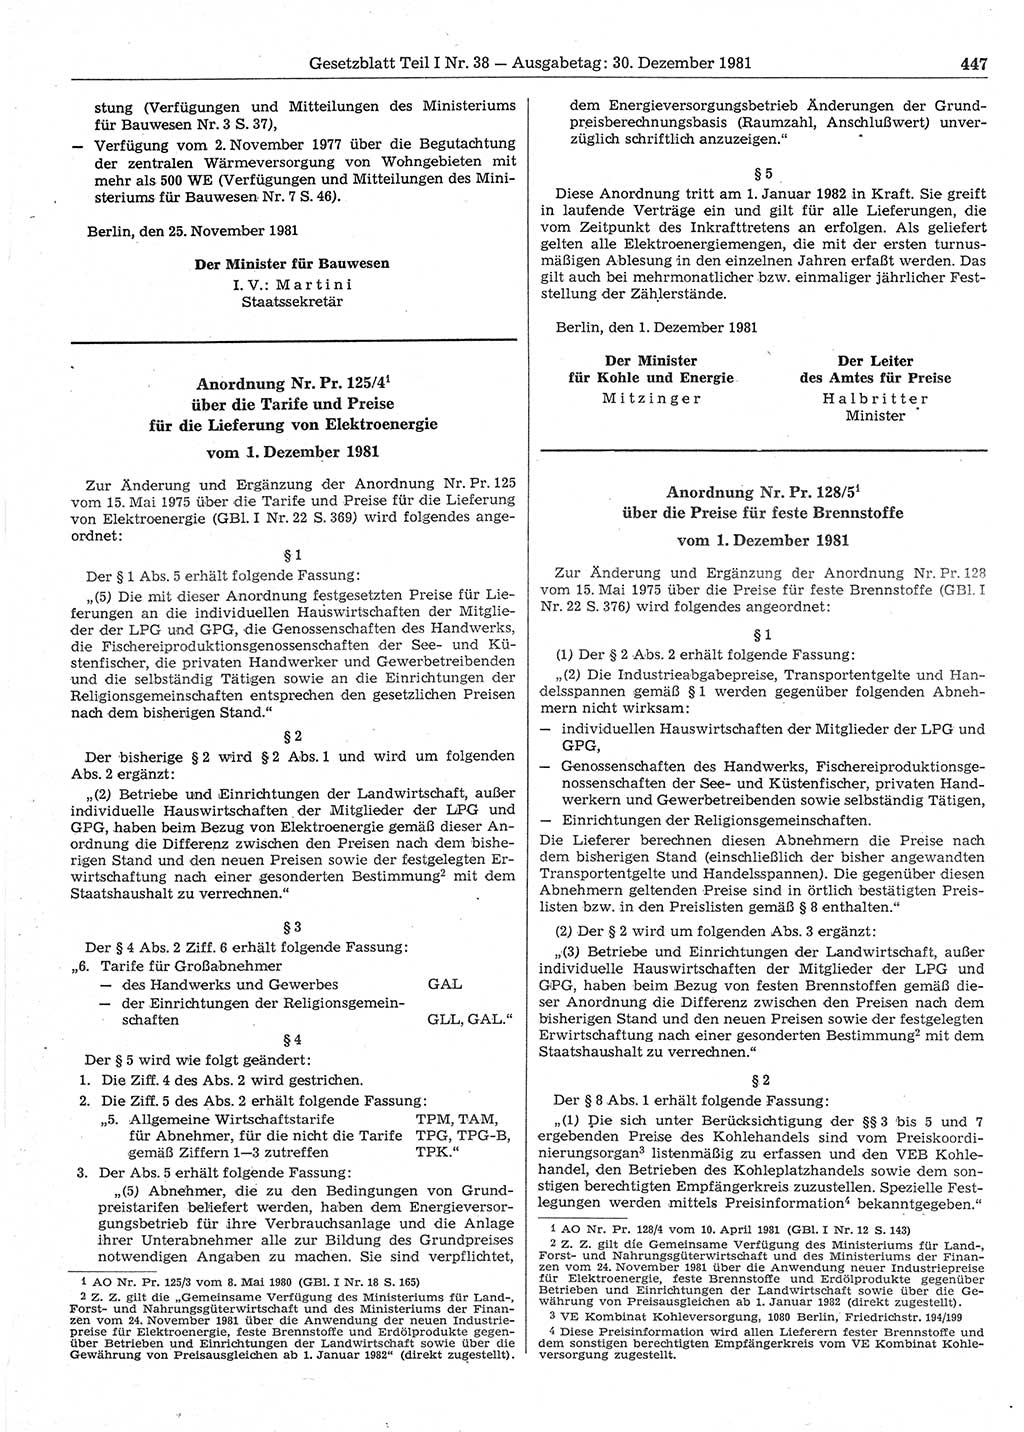 Gesetzblatt (GBl.) der Deutschen Demokratischen Republik (DDR) Teil Ⅰ 1981, Seite 447 (GBl. DDR Ⅰ 1981, S. 447)